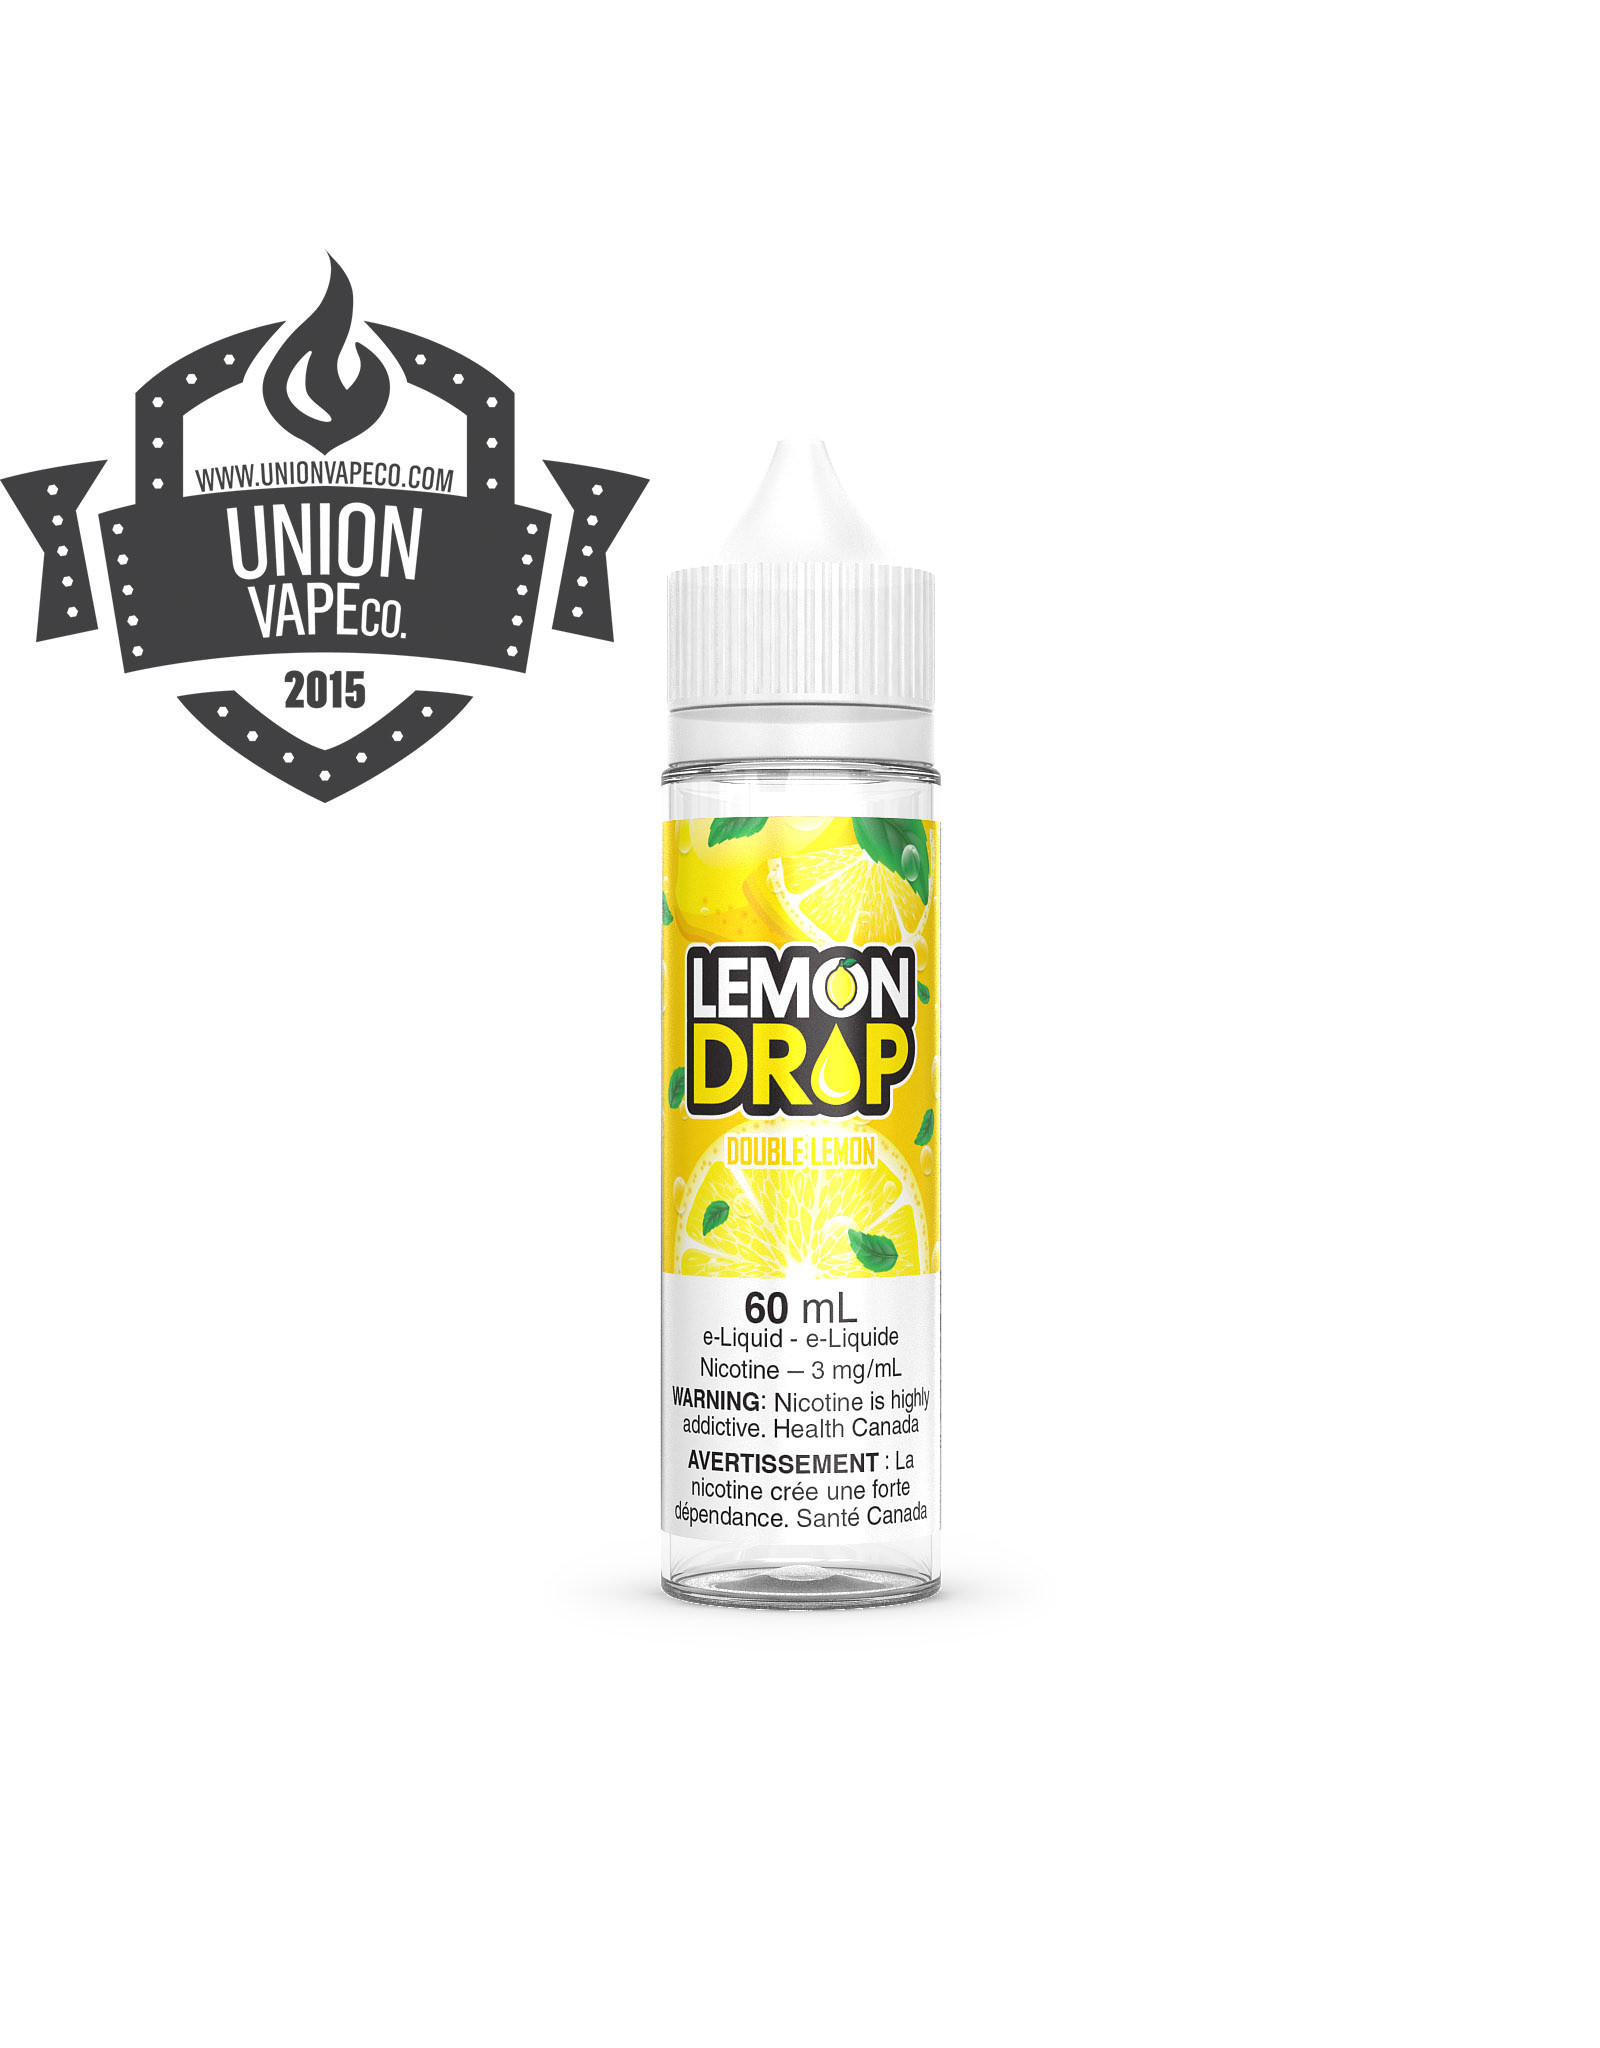 Lemon Drop Lemon Drop - Double Lemon (60ml)